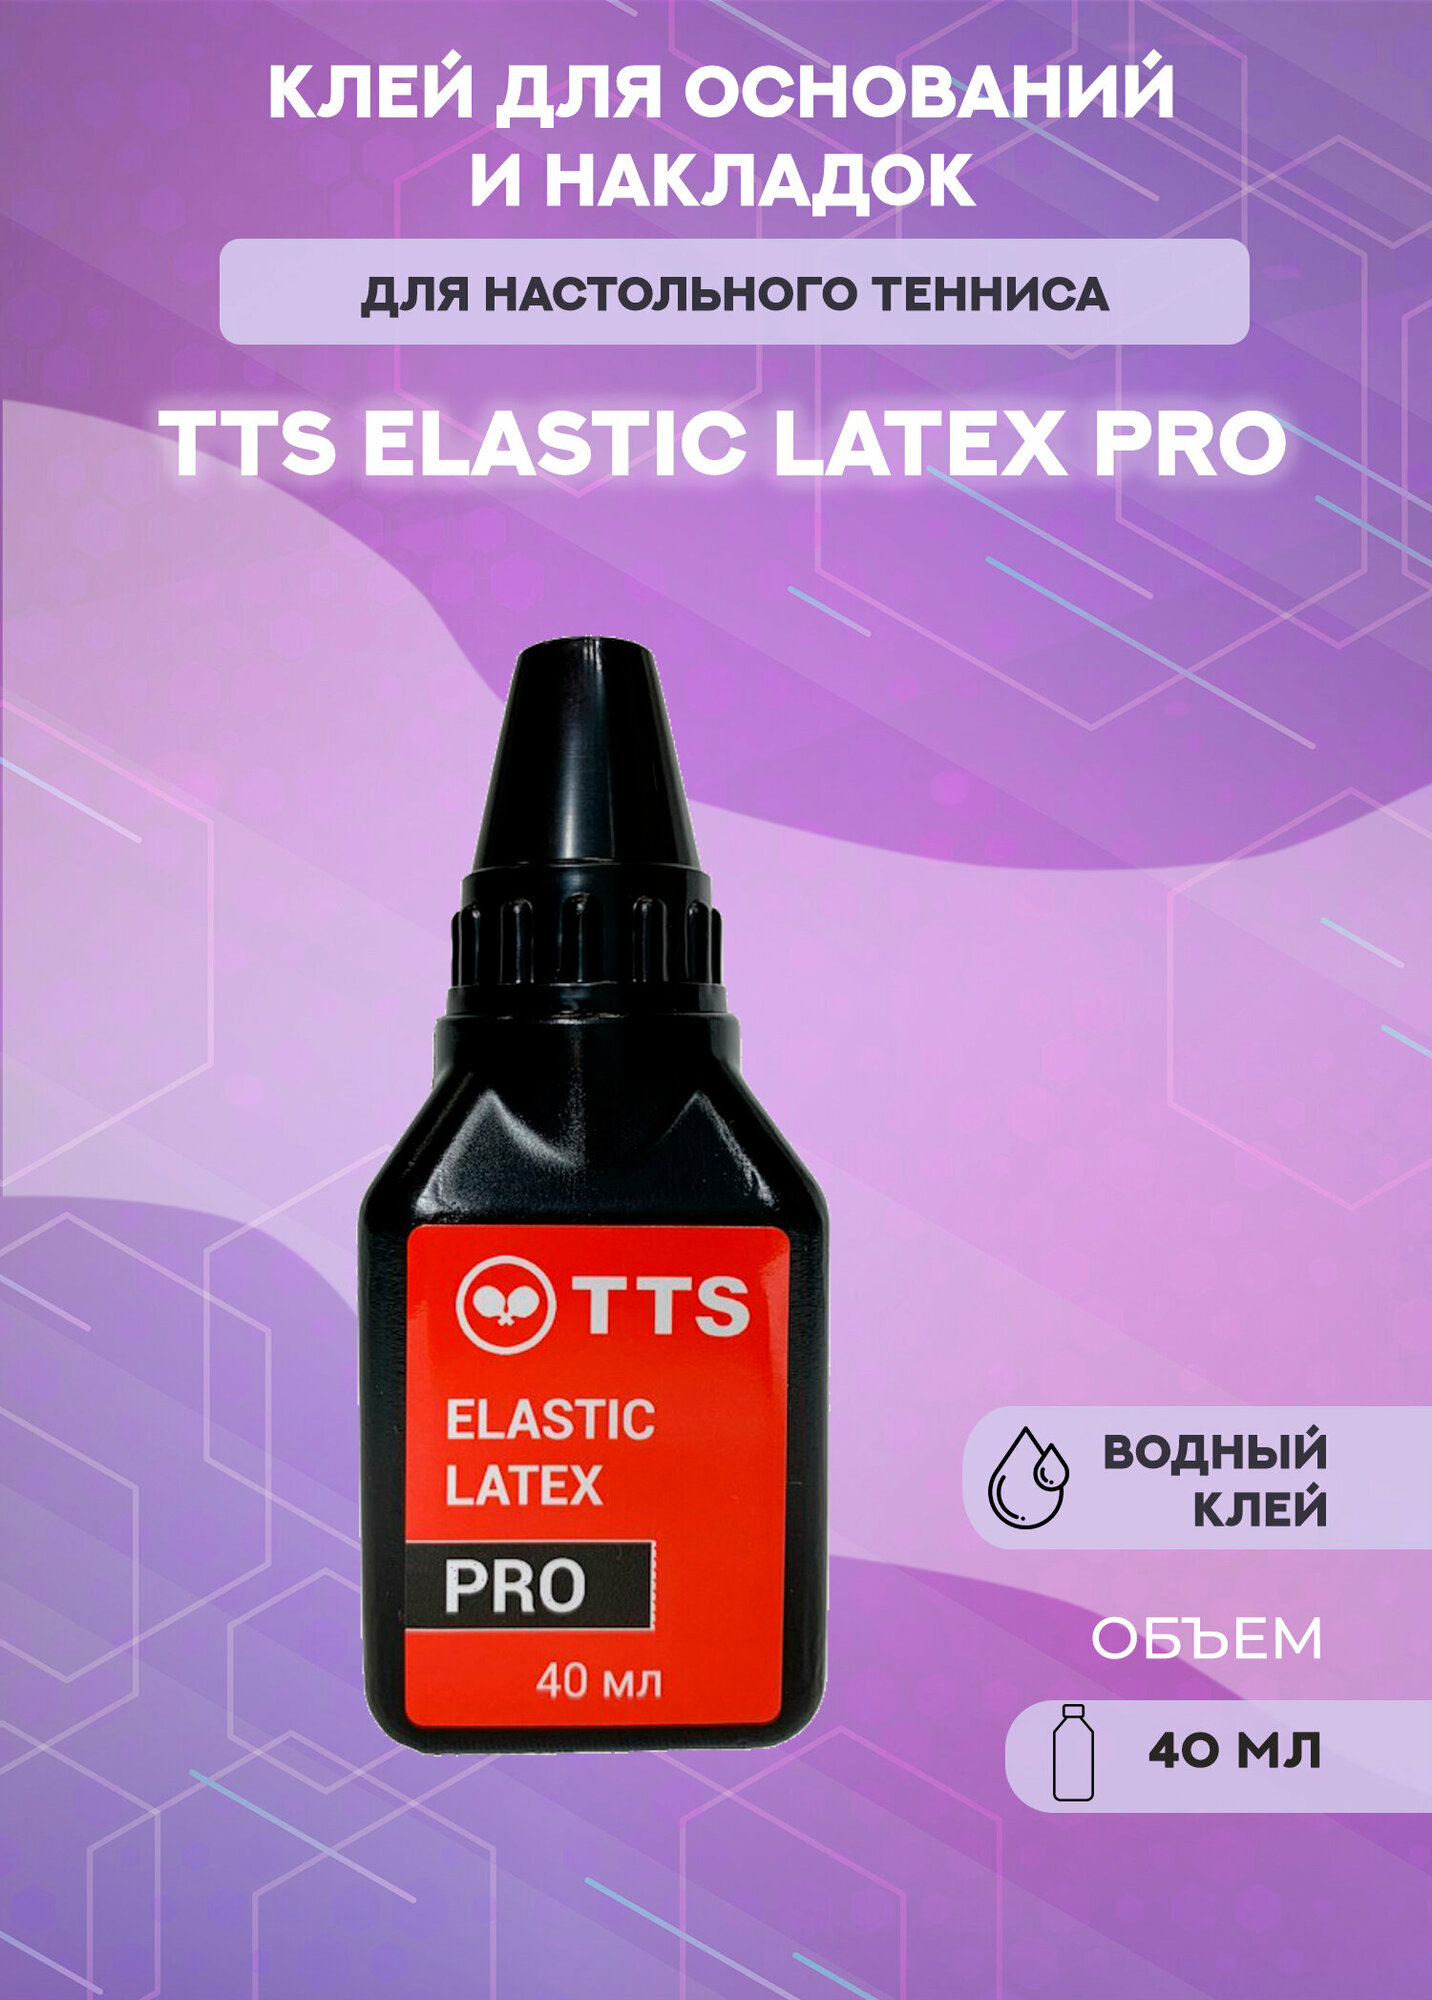 Клей для теннисных накладок TTS Elastic Latex Pro 40 мл